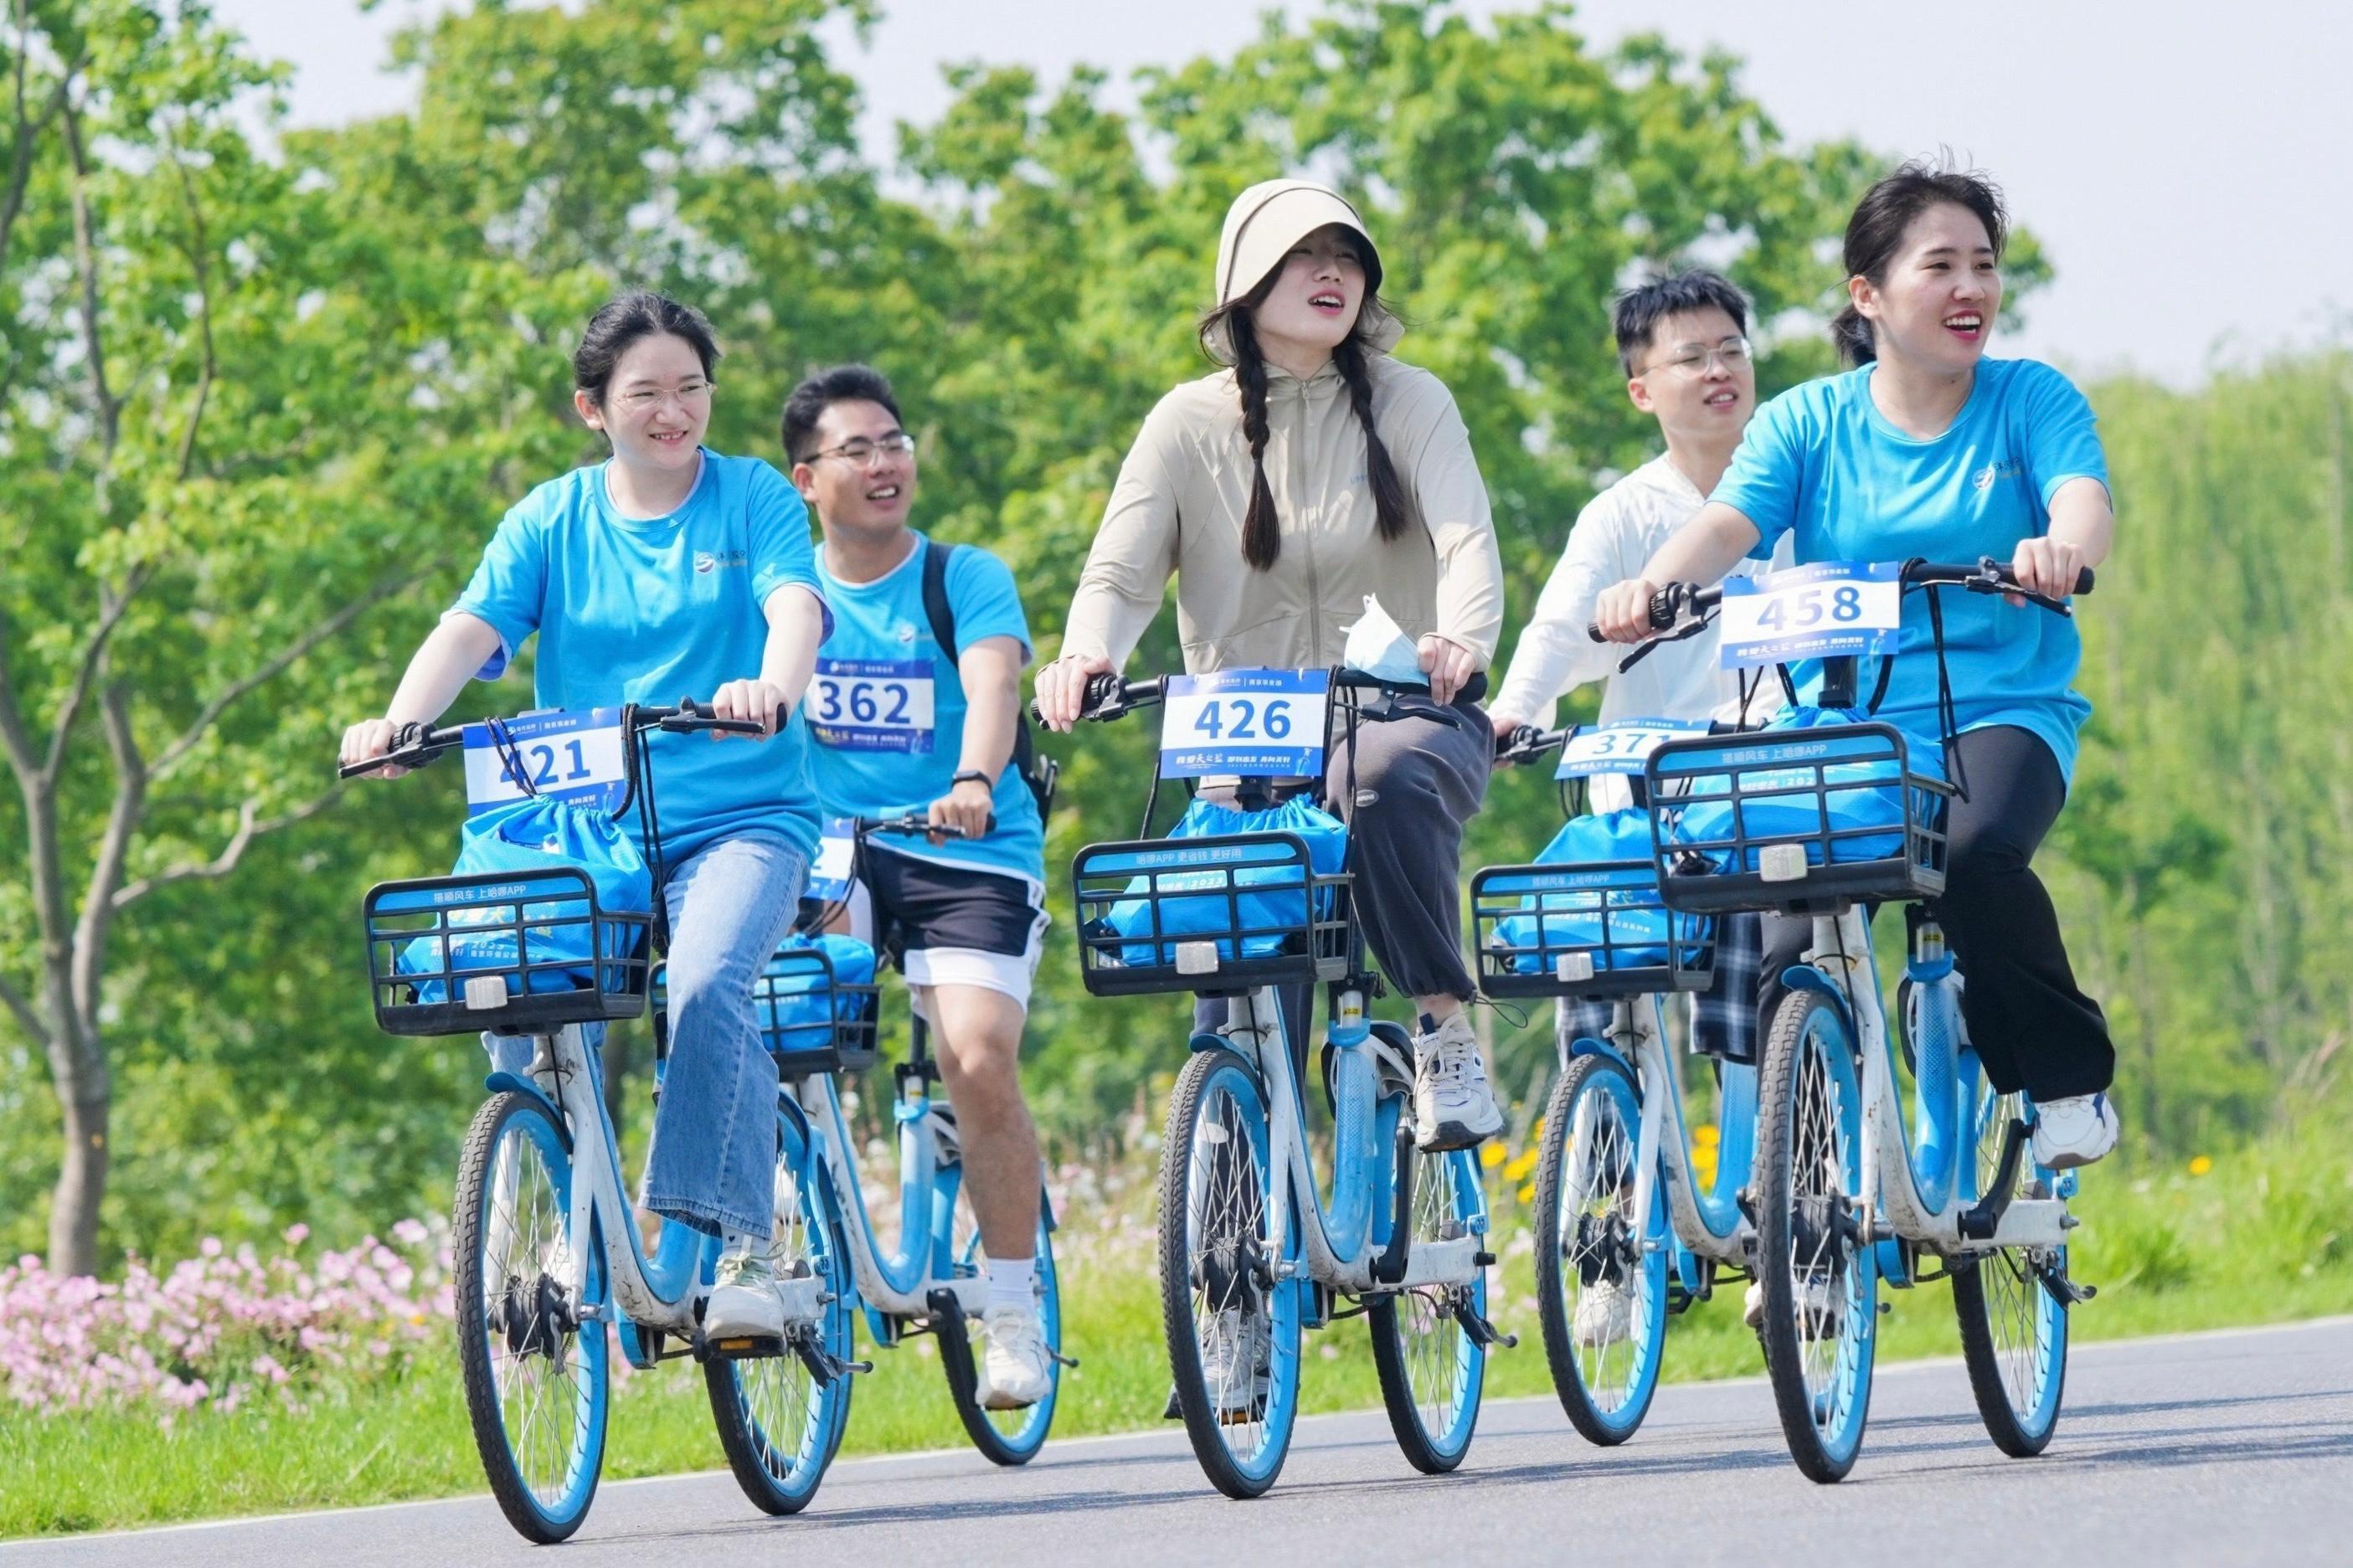 倡导低碳出行、健康生活!哈啰单车公益支持南京江心洲环岛骑行赛